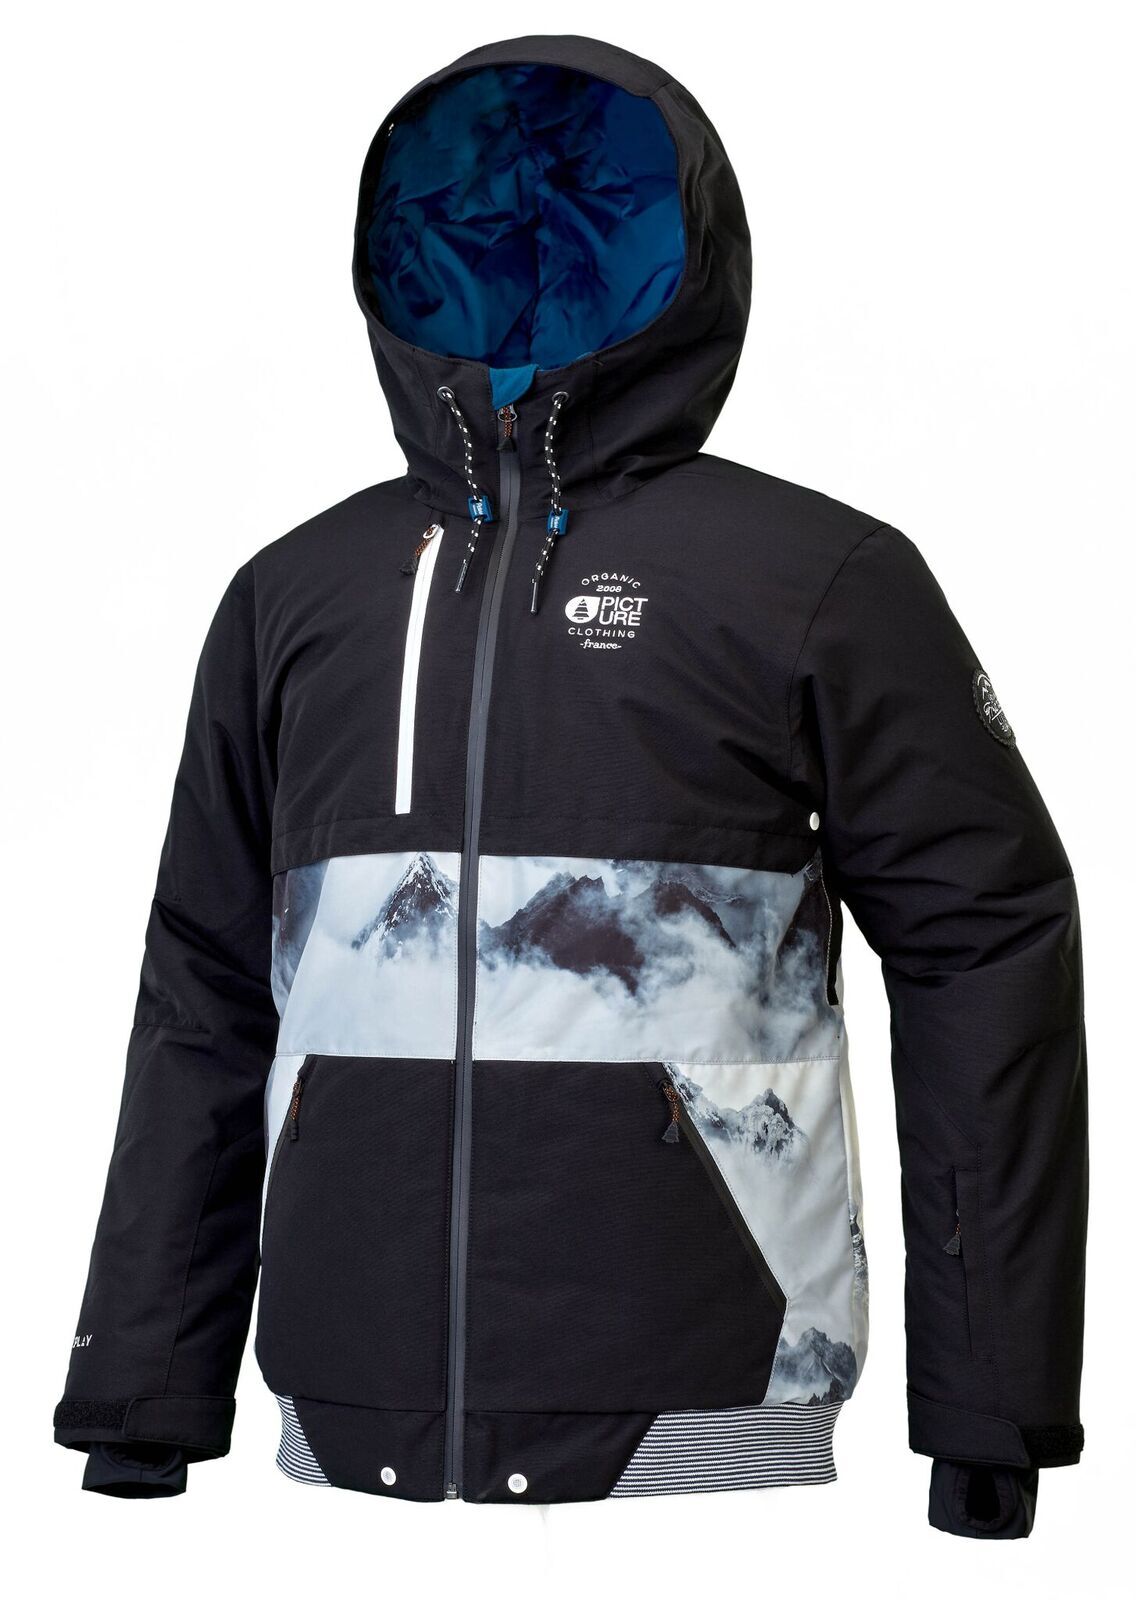 Picture Organic Clothing - Panel - Ski jacket - Men's